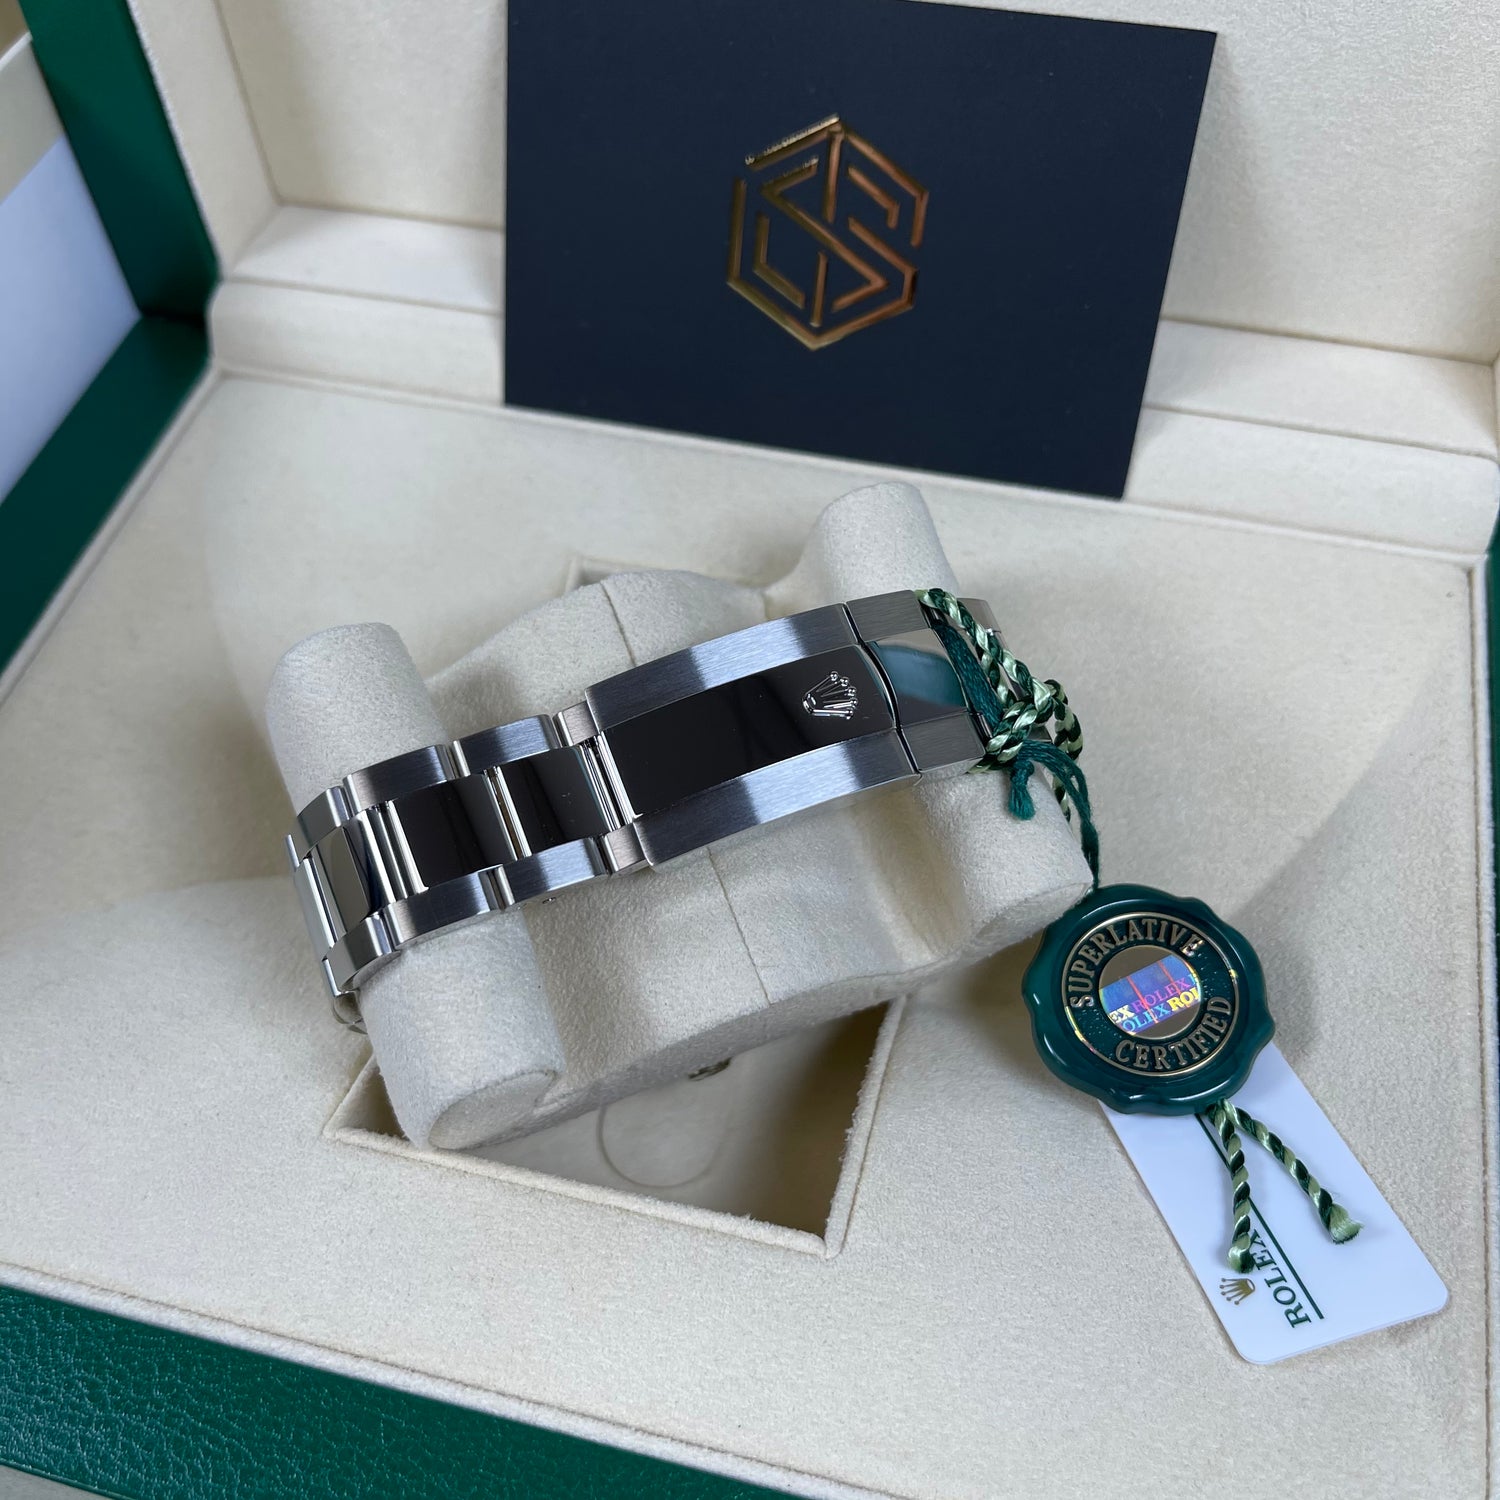 Rolex Sky-Dweller Blue Dial 326934 Brand New 2021 Watch